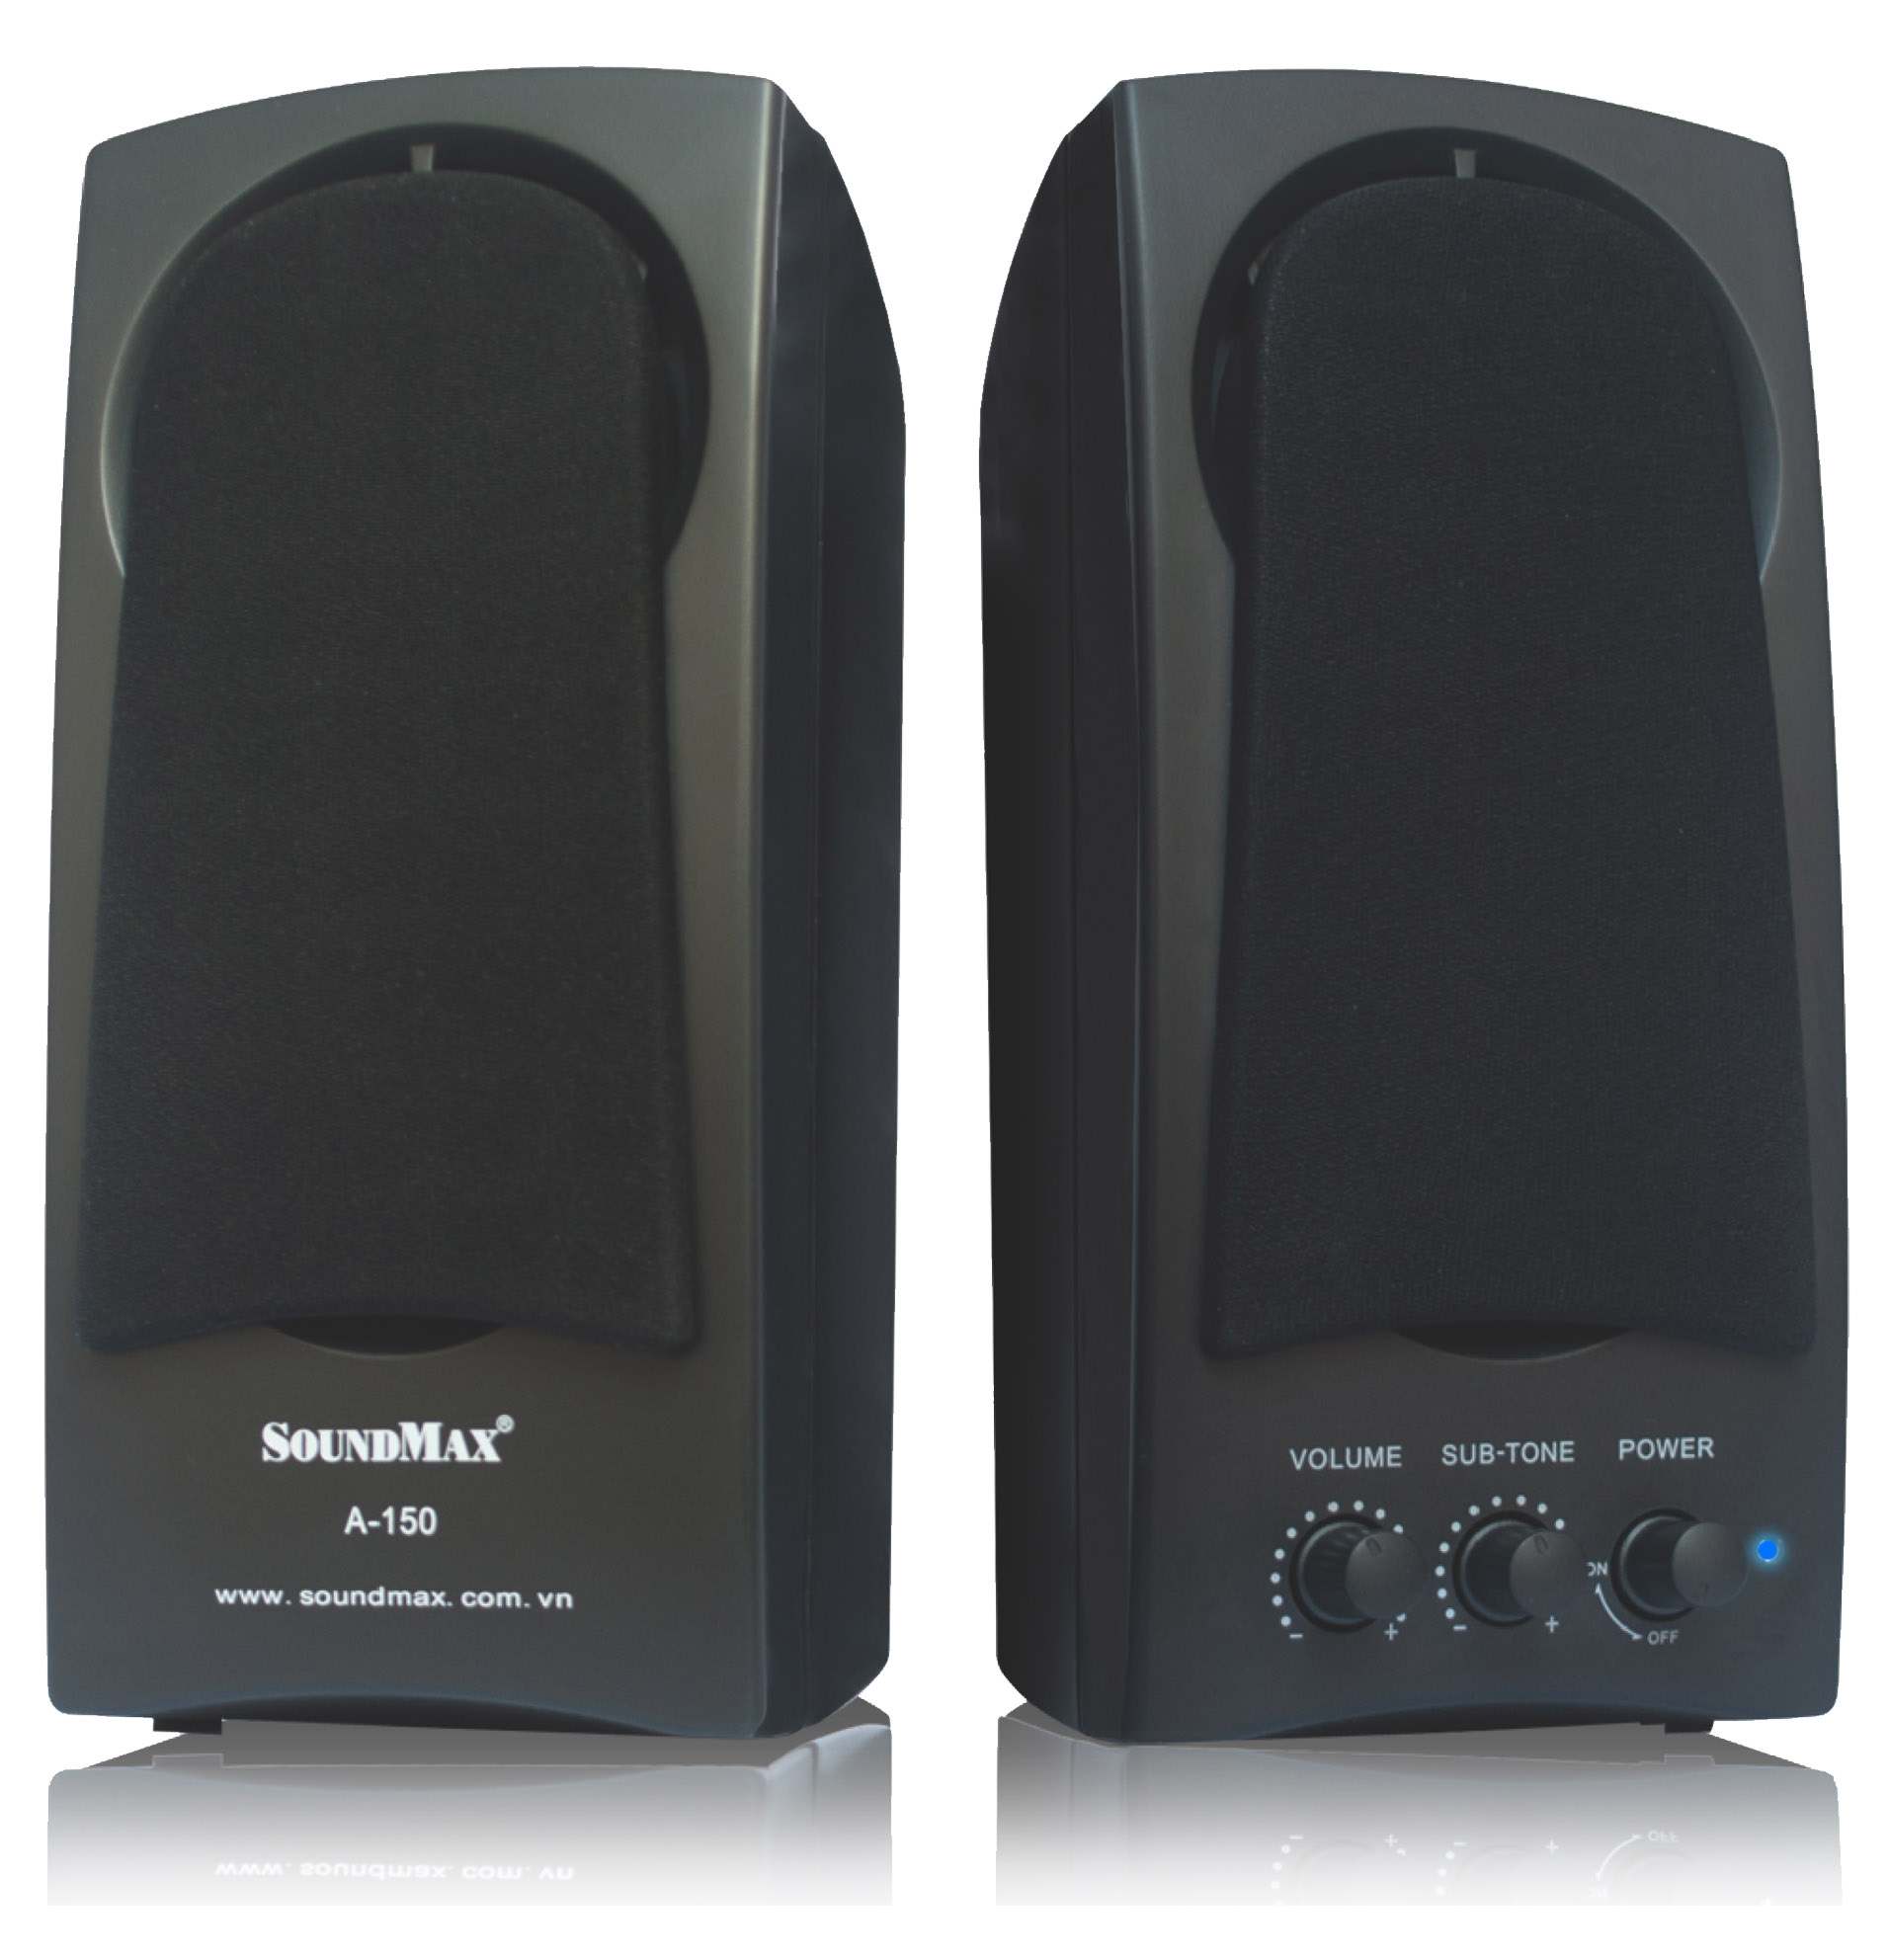 Loa vi tính Soundmax A150 có vỏ được thiết kế bằng chất liệu nhựa màu đen cao cấp bền. Chắc chắn bảo vệ các linh kiện bên trong được an toàn khỏi các chấn động bất chợt.    Màng loa được cấu tạo bằng nam châm Neodymium có khả năng chống nhiễu. Cho bạn trải nghiệm nghe âm thanh trong hơn